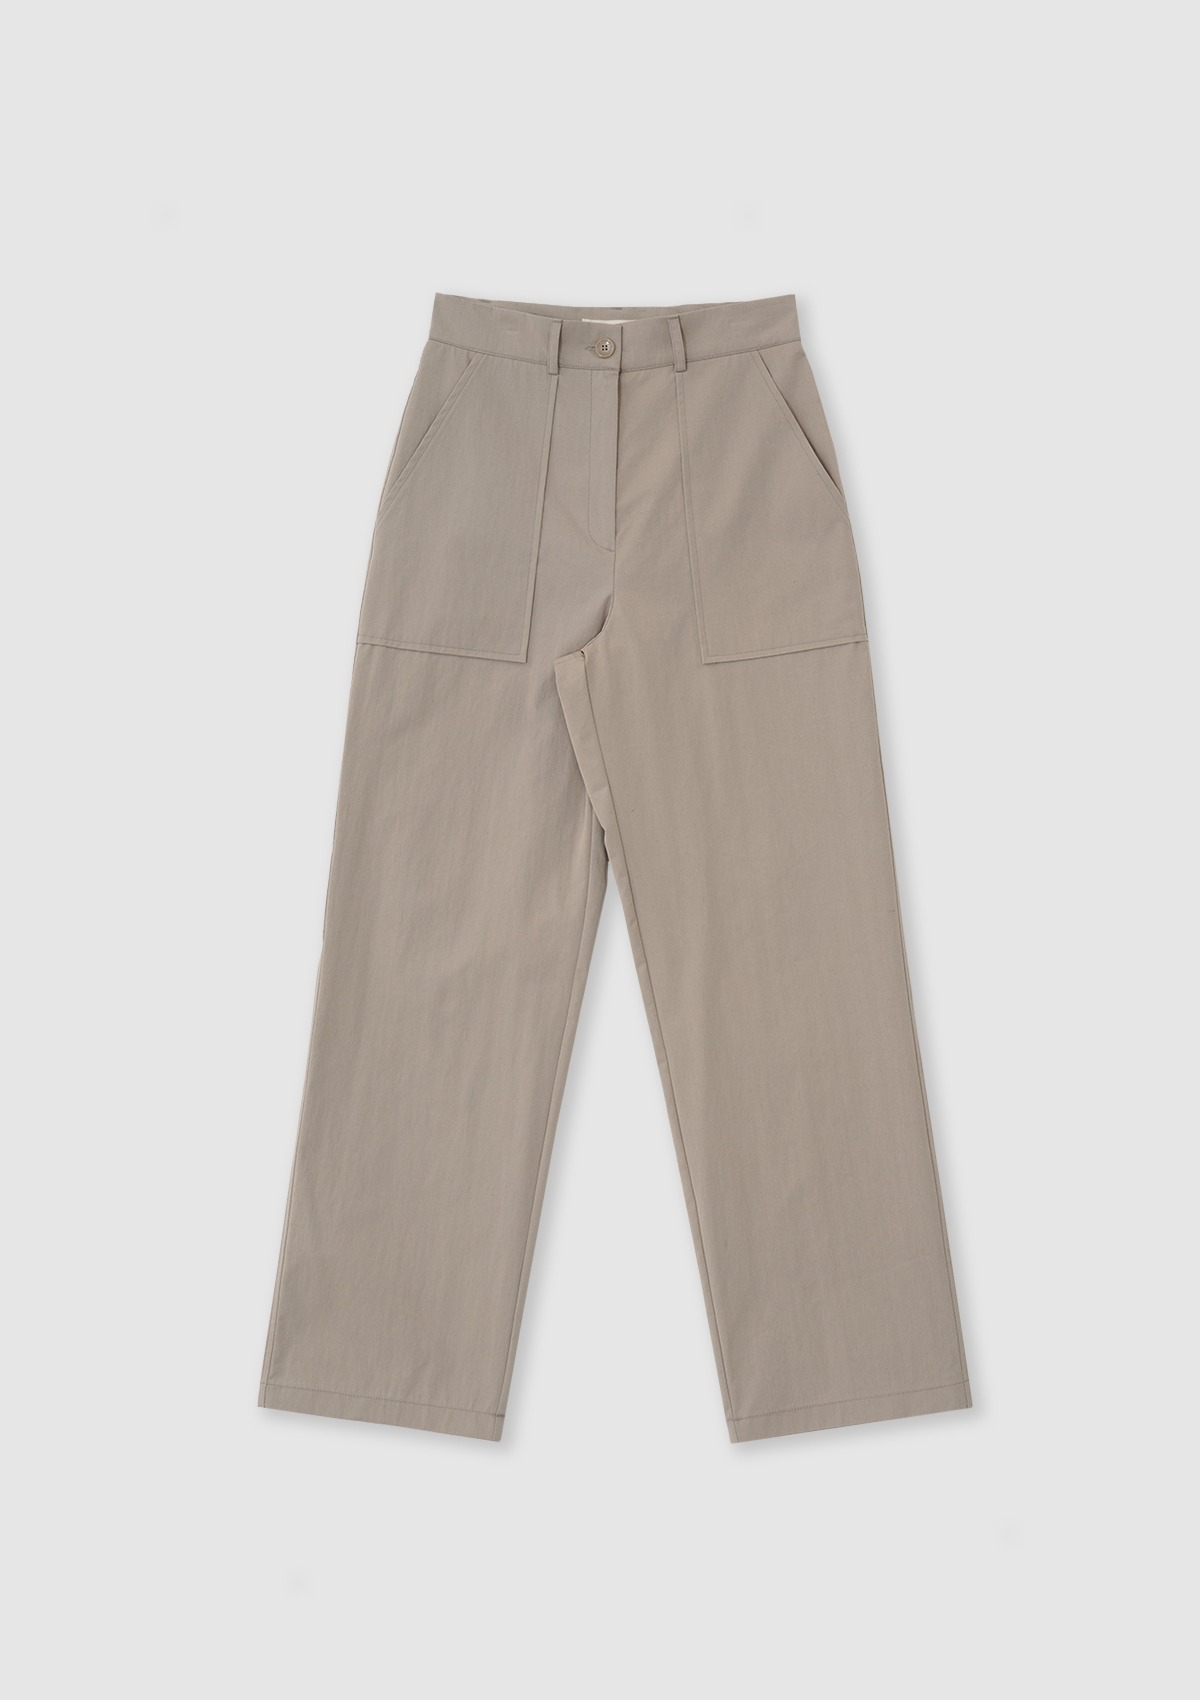 Pocket Pants (Beige)